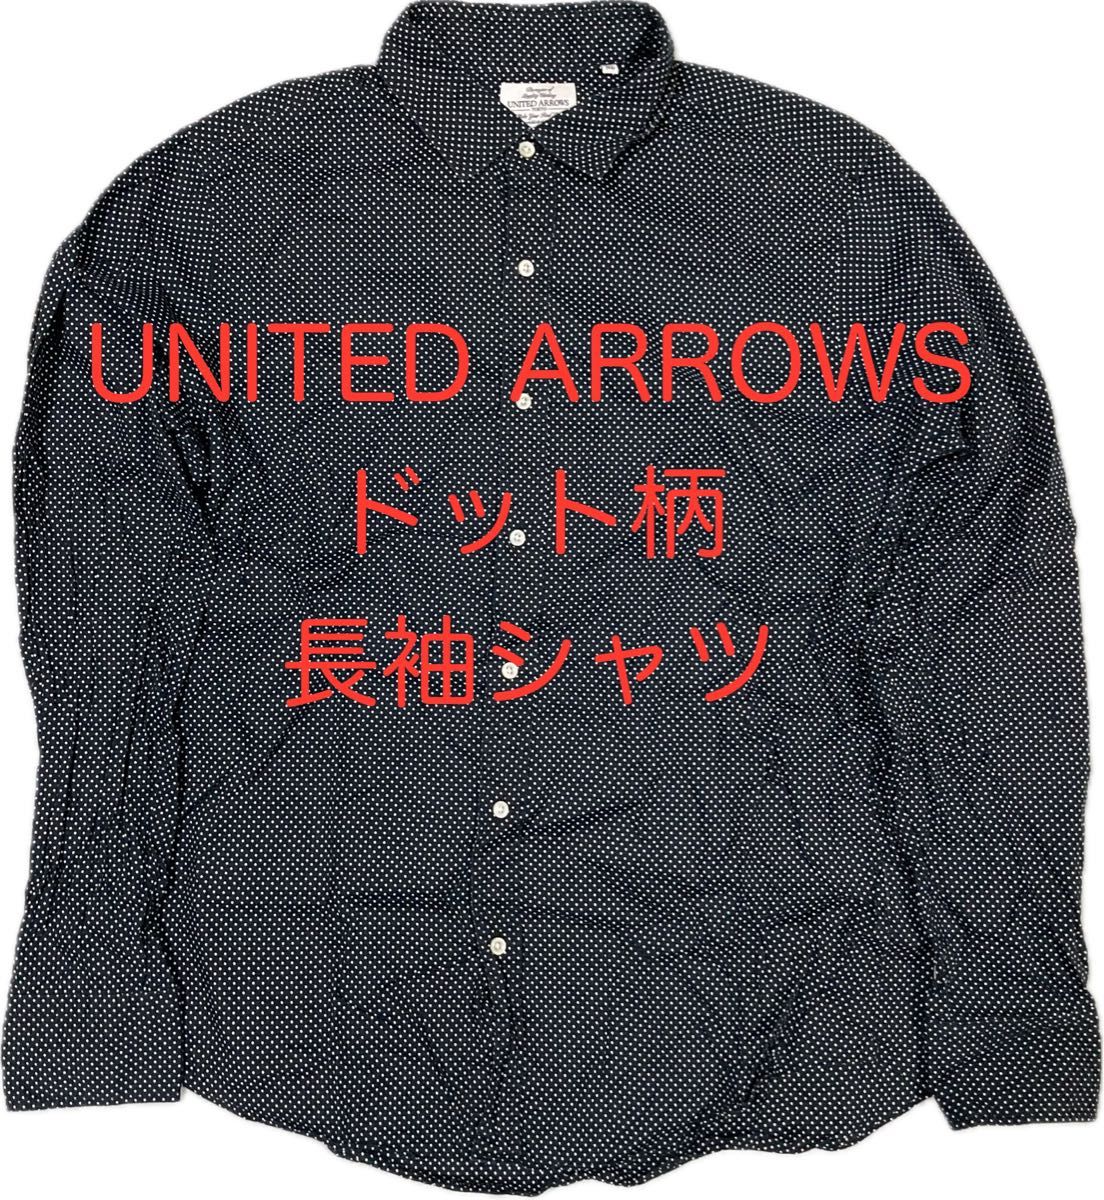 ユナイテッドアローズ UNITED ARROWS ドット柄 長袖シャツ XL